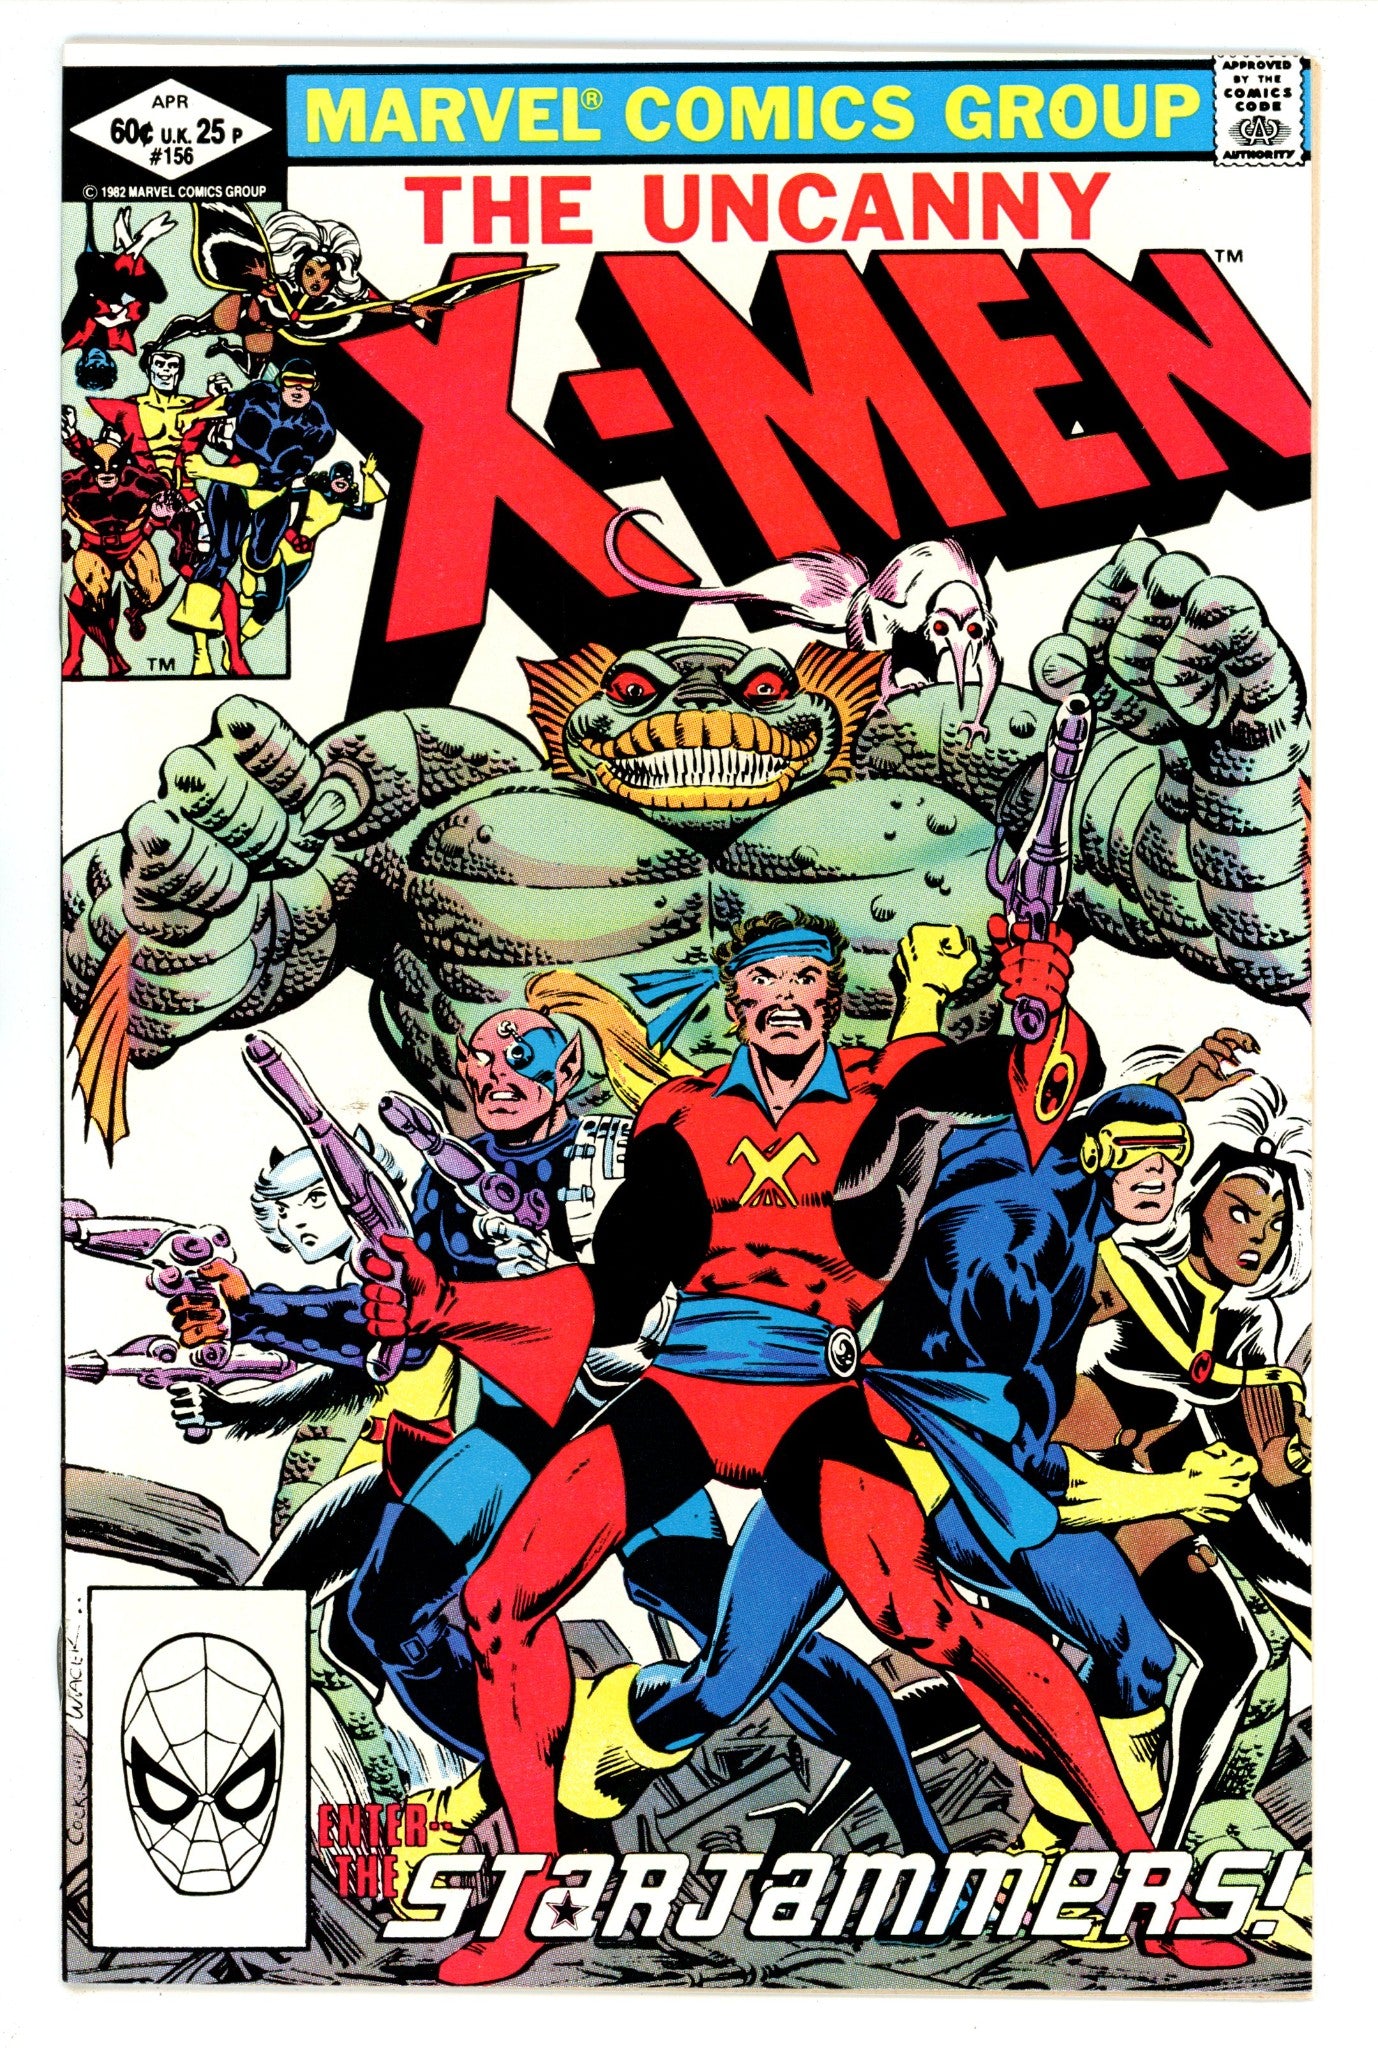 The Uncanny X-Men Vol 1 156 VF/NM (9.0) (1982) 